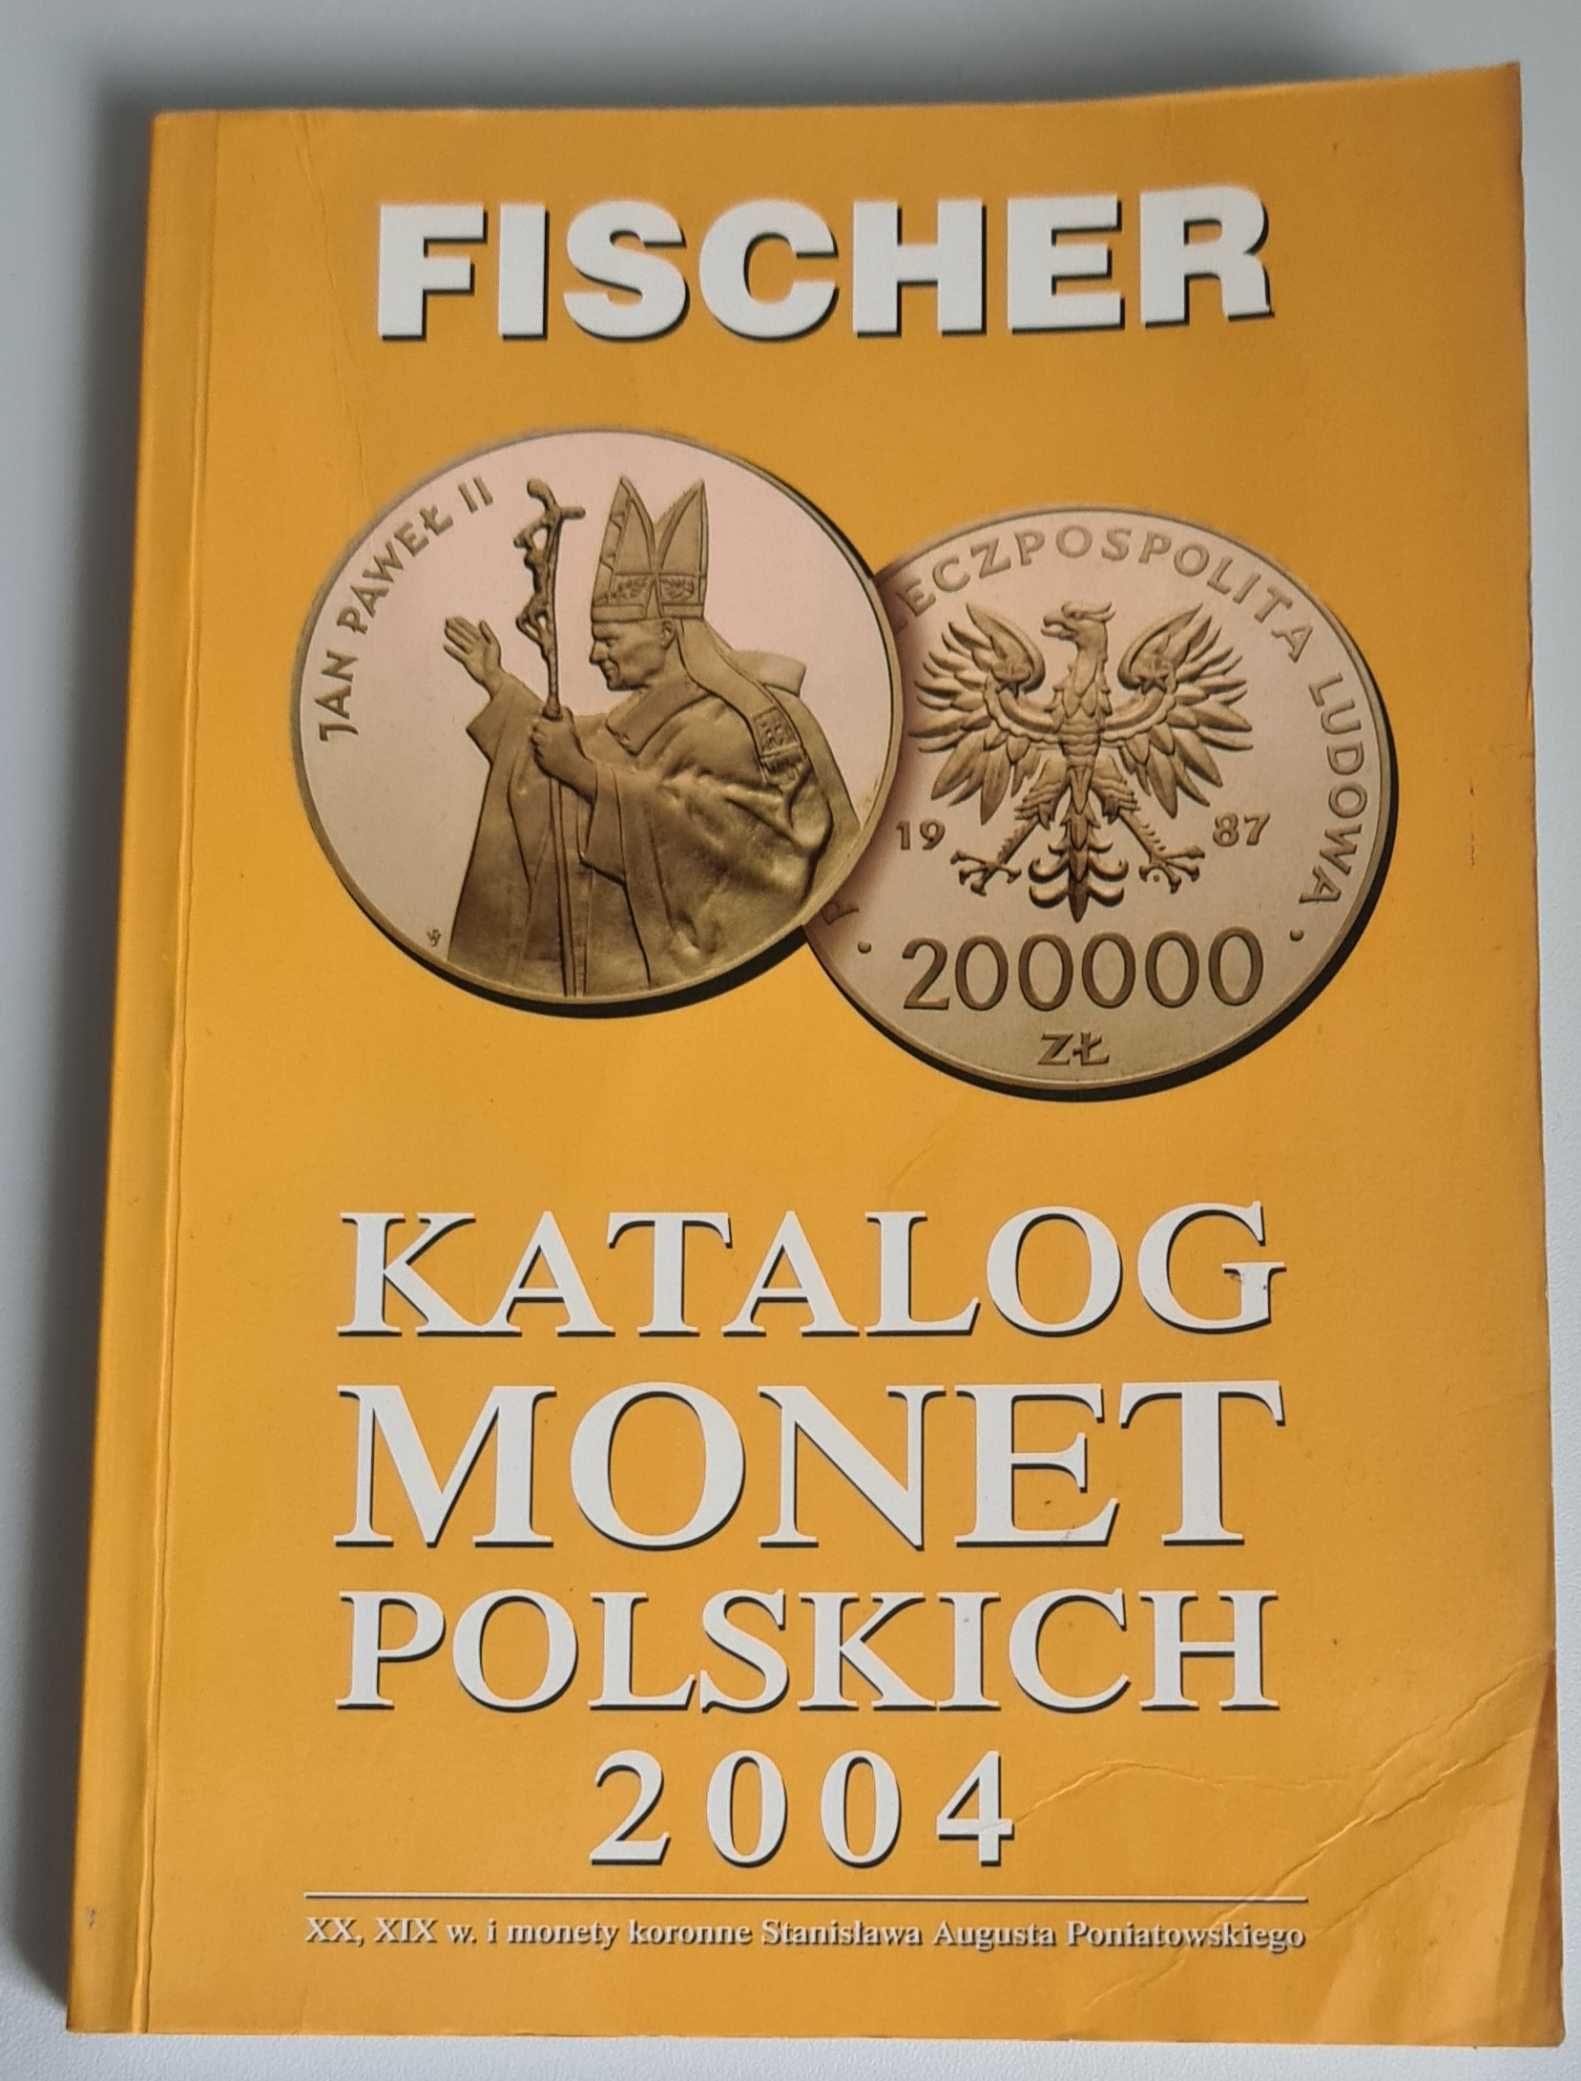 Katalog monet polskich 2004 FISCHER